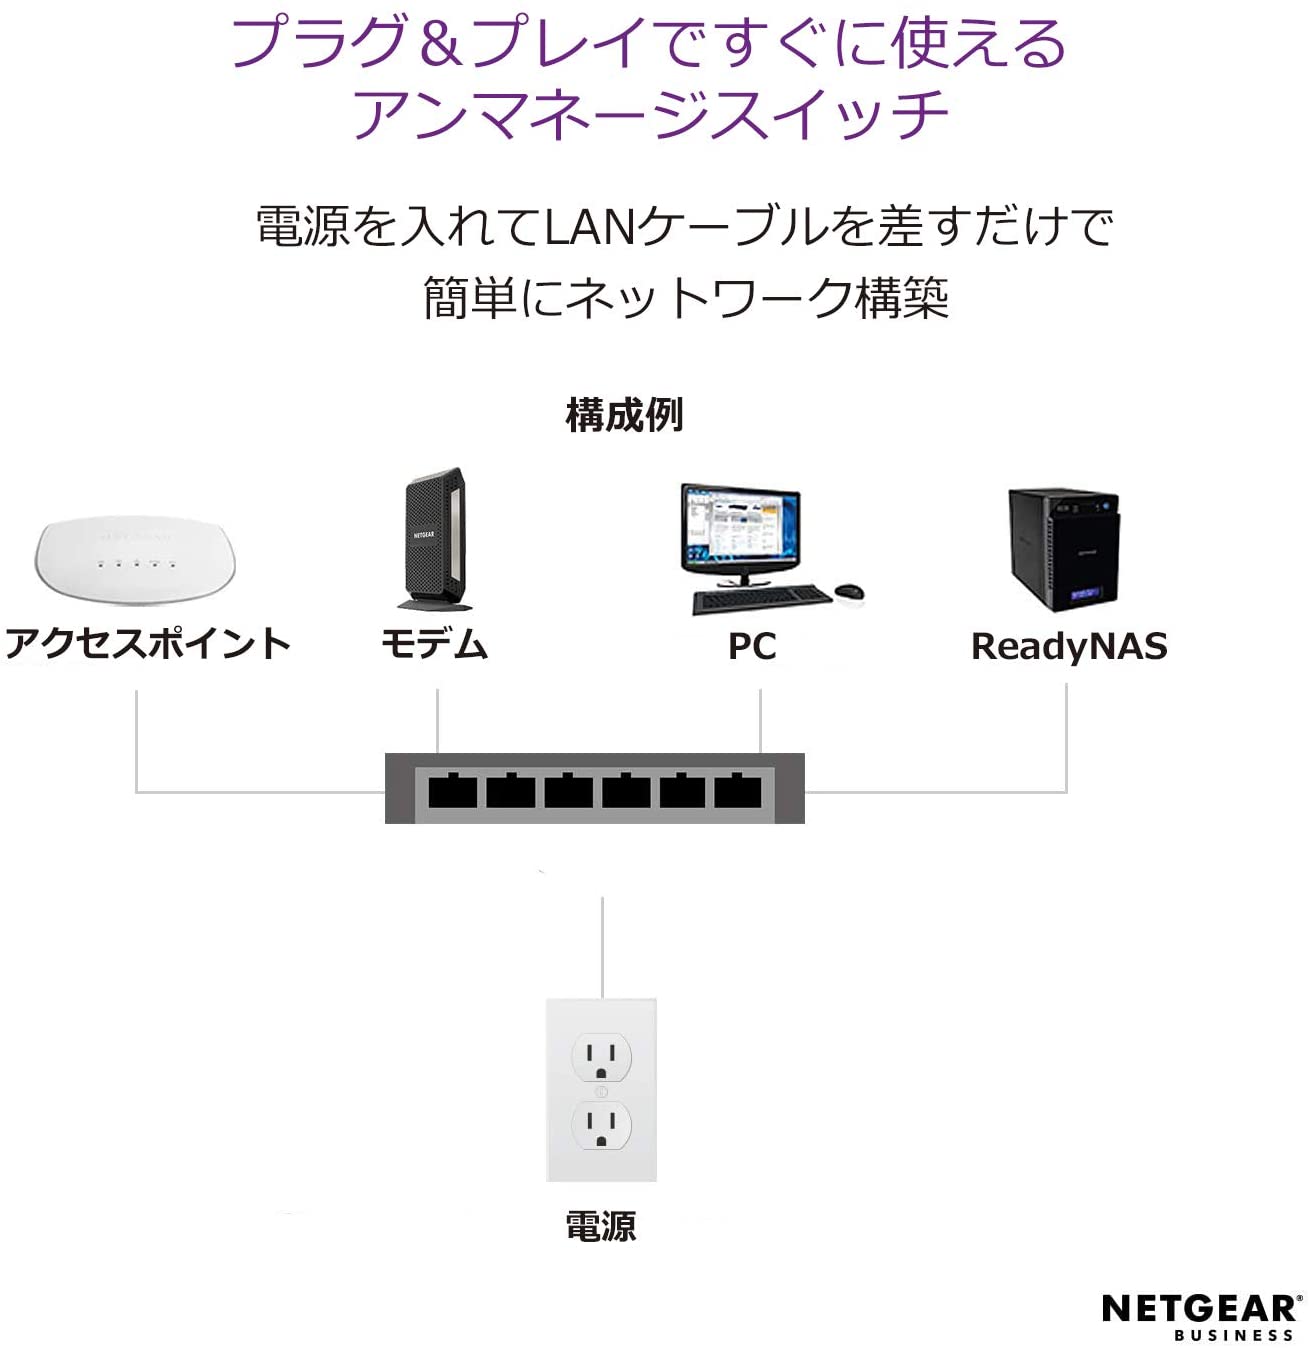 NETGEAR 卓上型コンパクトアンマネージスイッチングハブ GS305PP